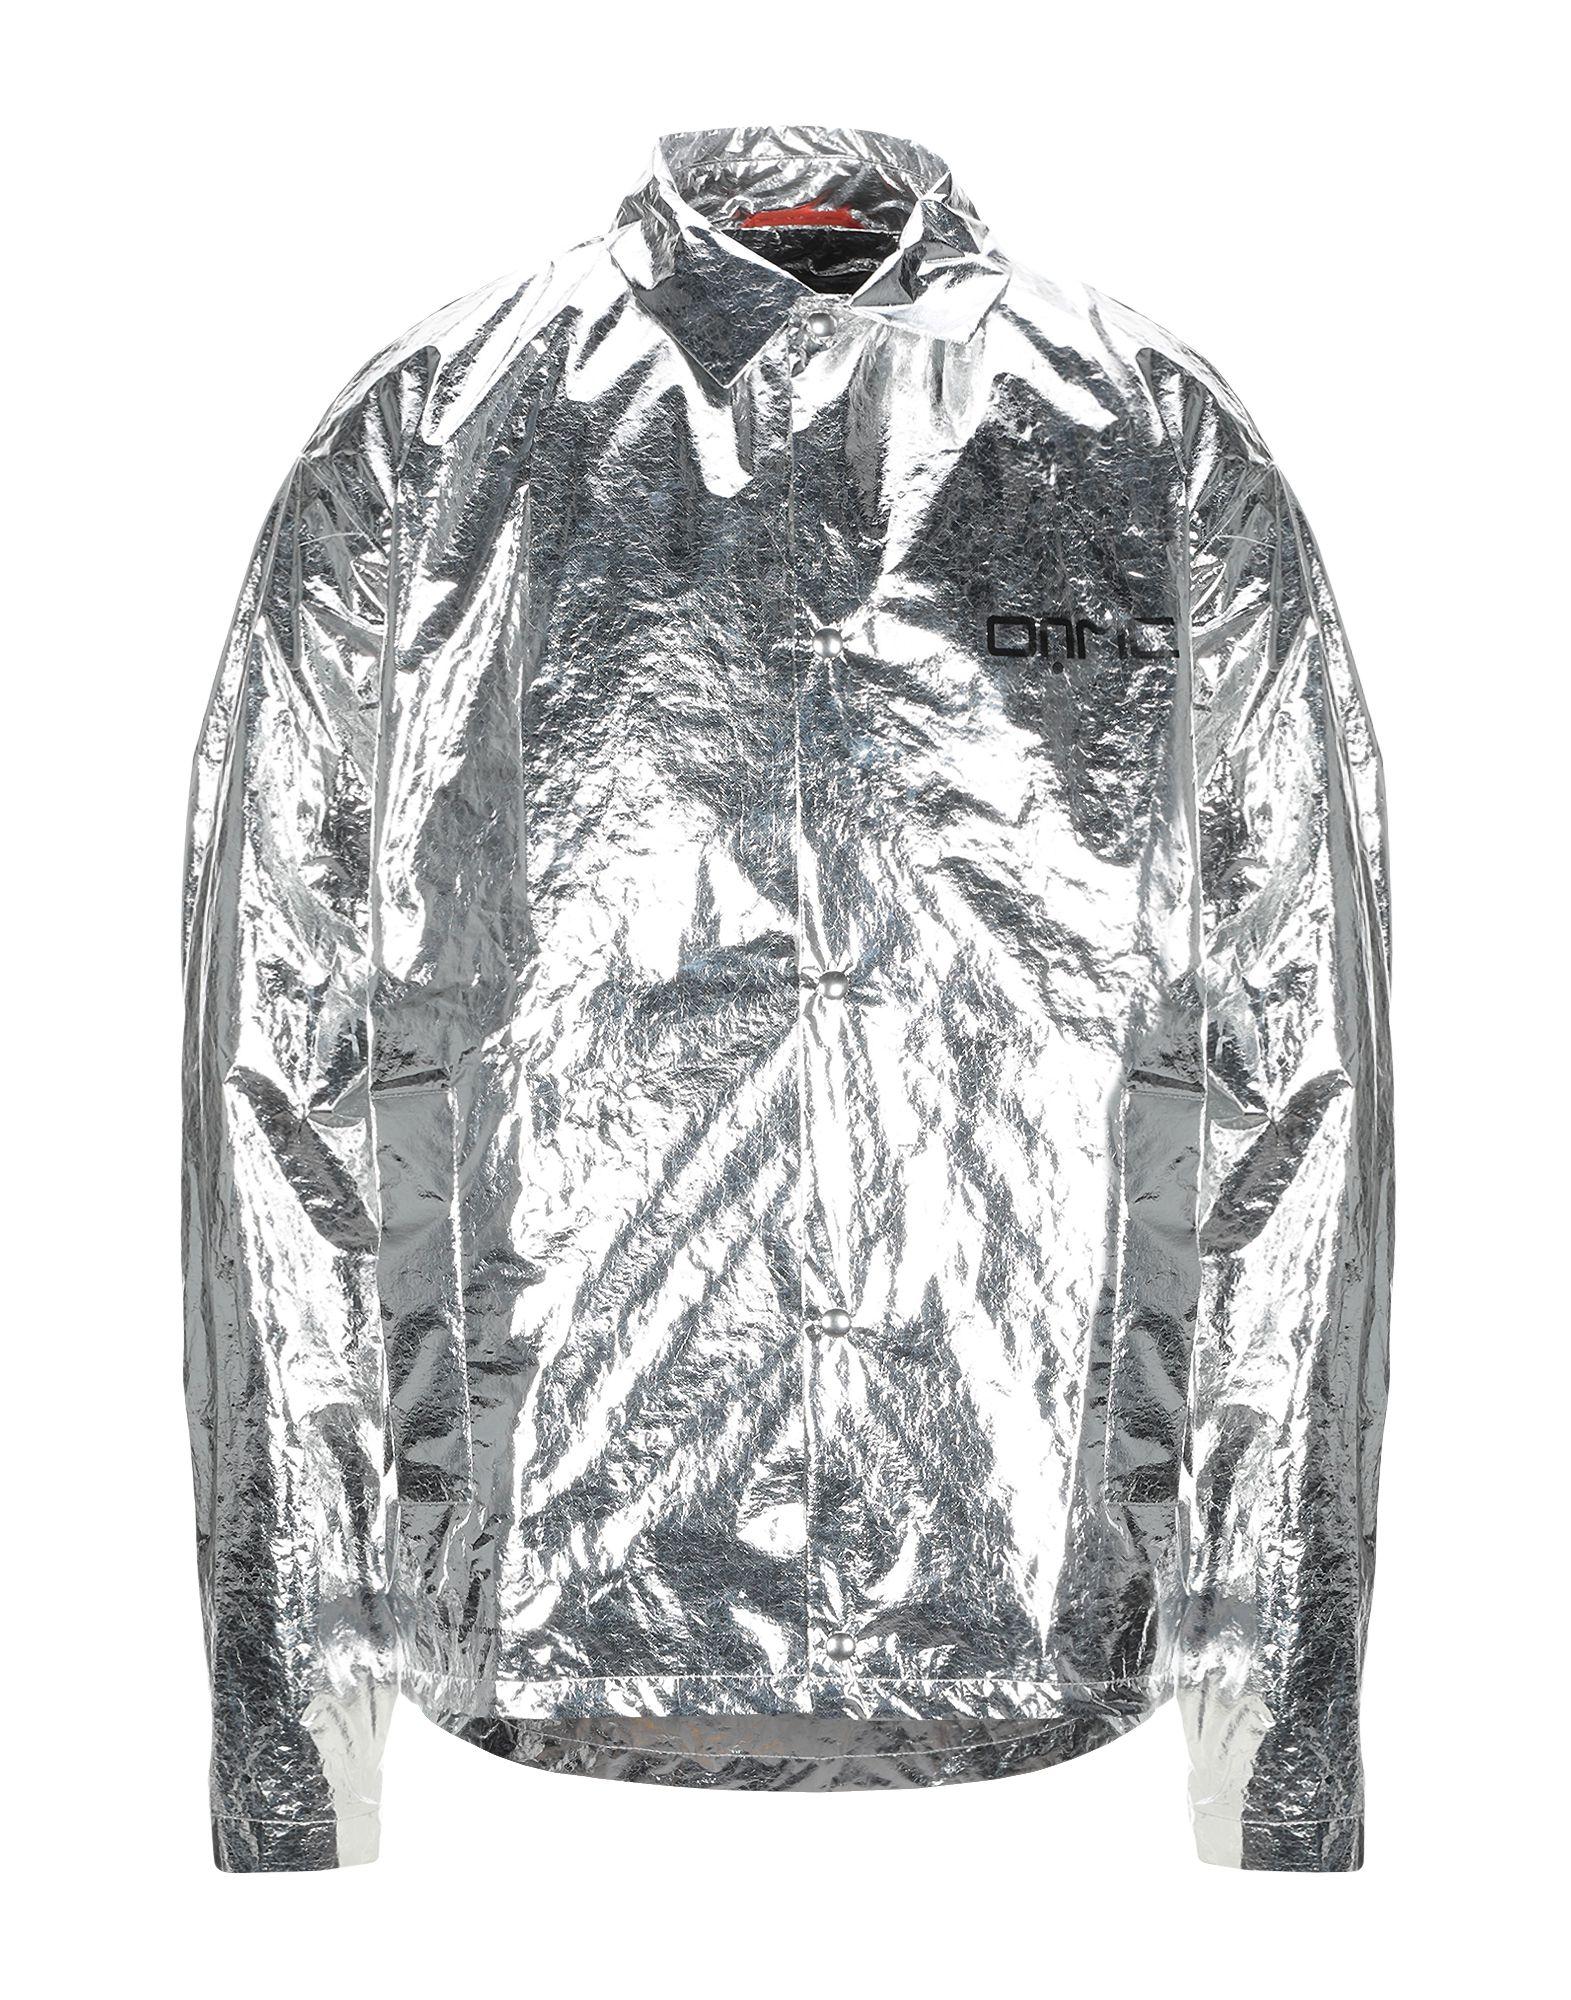 OAMC Synthetic Jacket in Silver (Metallic) for Men - Lyst